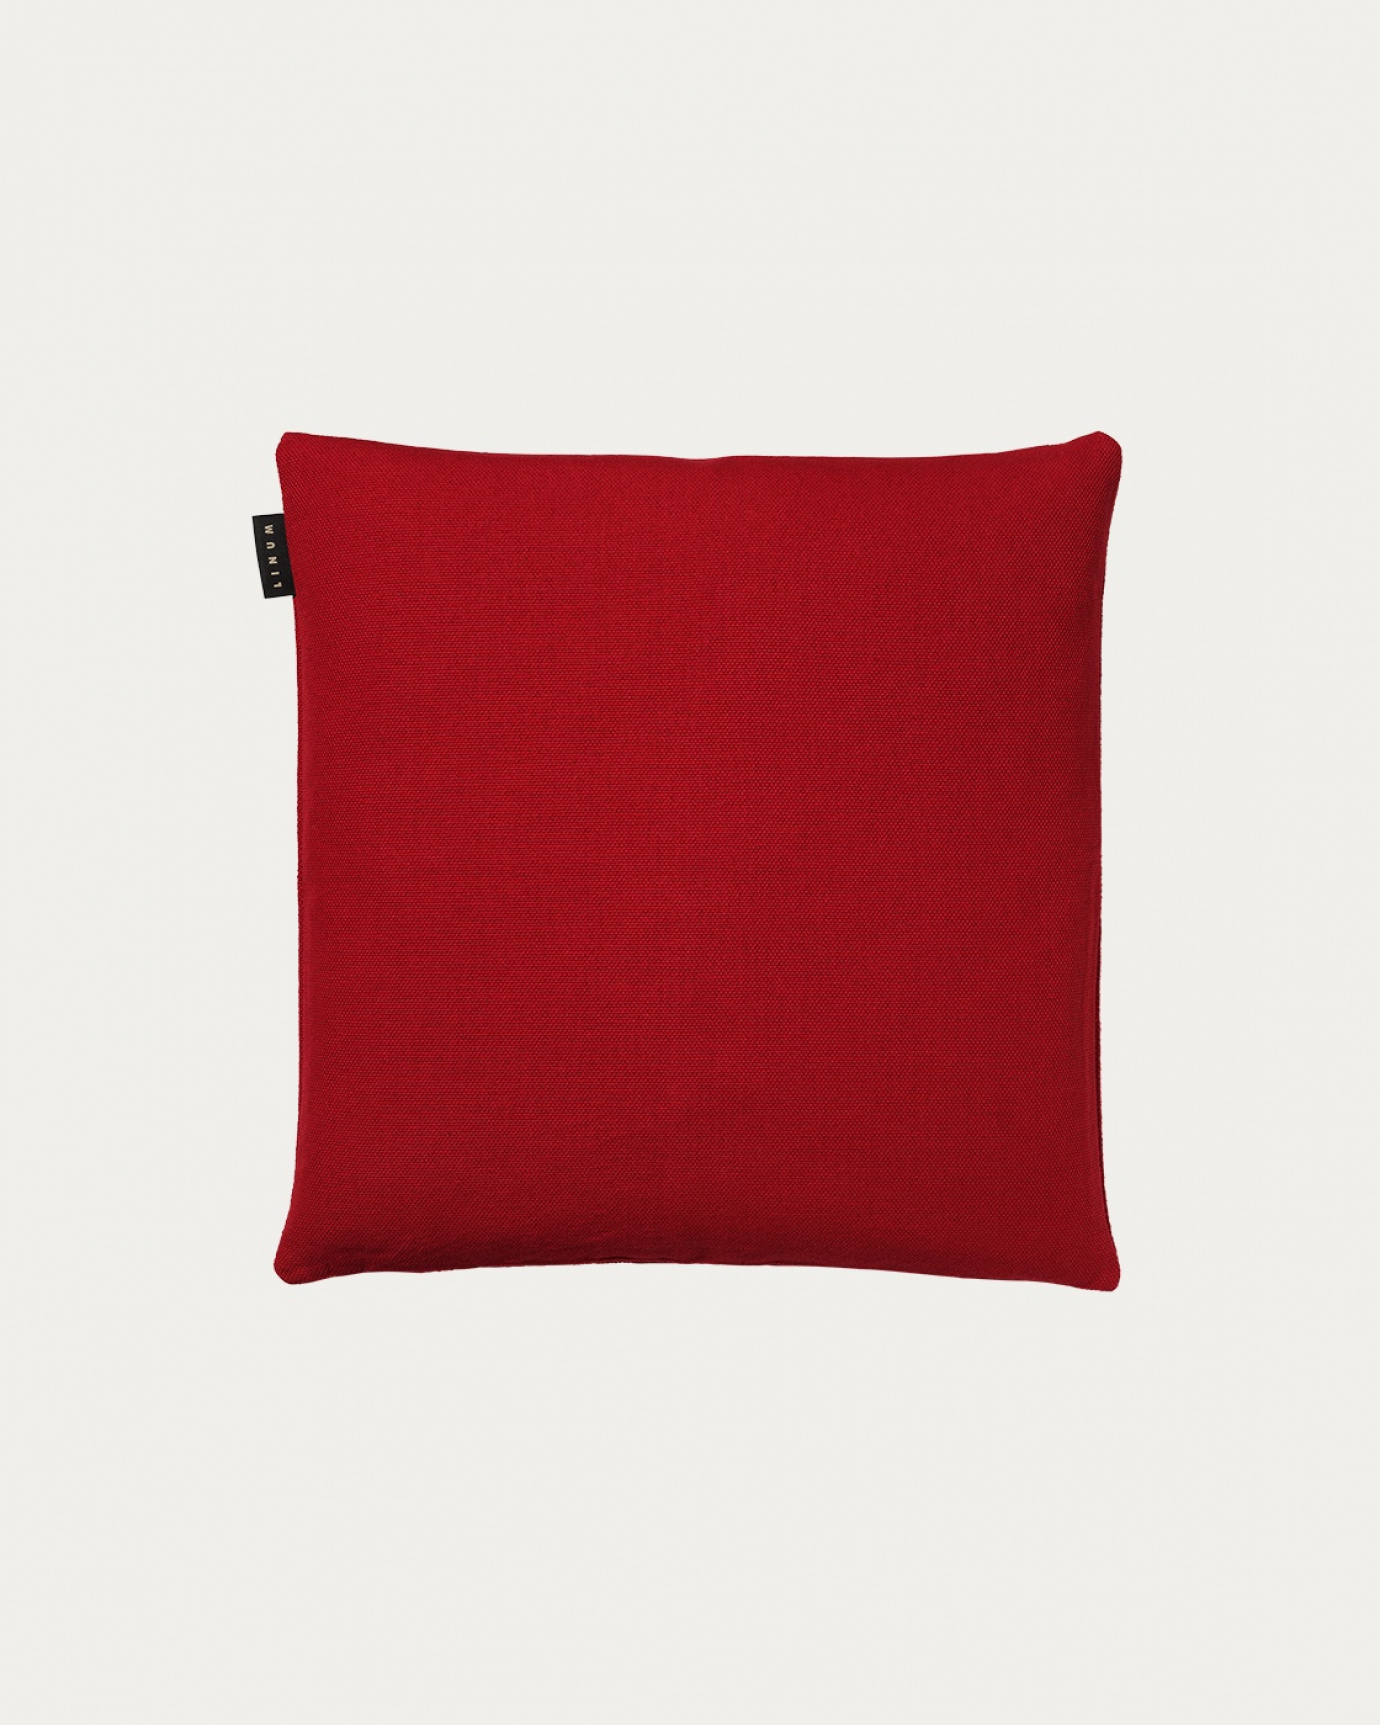 Immagine prodotto rosso PEPPER copricuscini in morbido cotone di LINUM DESIGN. Facile da lavare e resistente per generazioni. Dimensioni 40x40 cm.